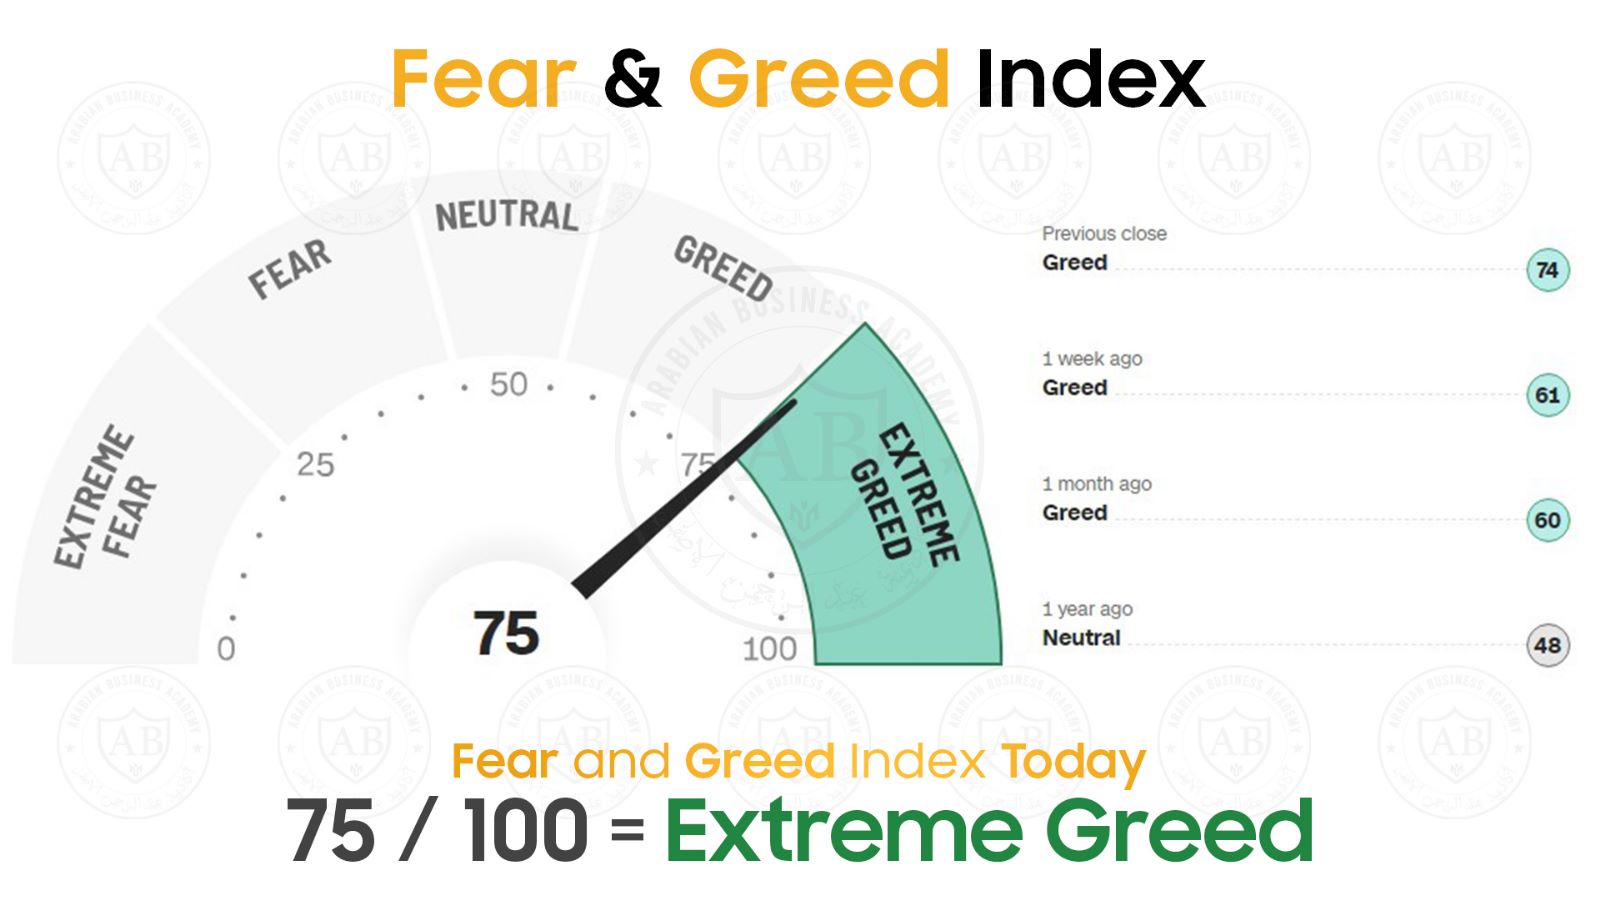 مؤشر  Fear and Greed  في أسواق الأسهم يشير  الى 75 /100  لجلسة اليوم